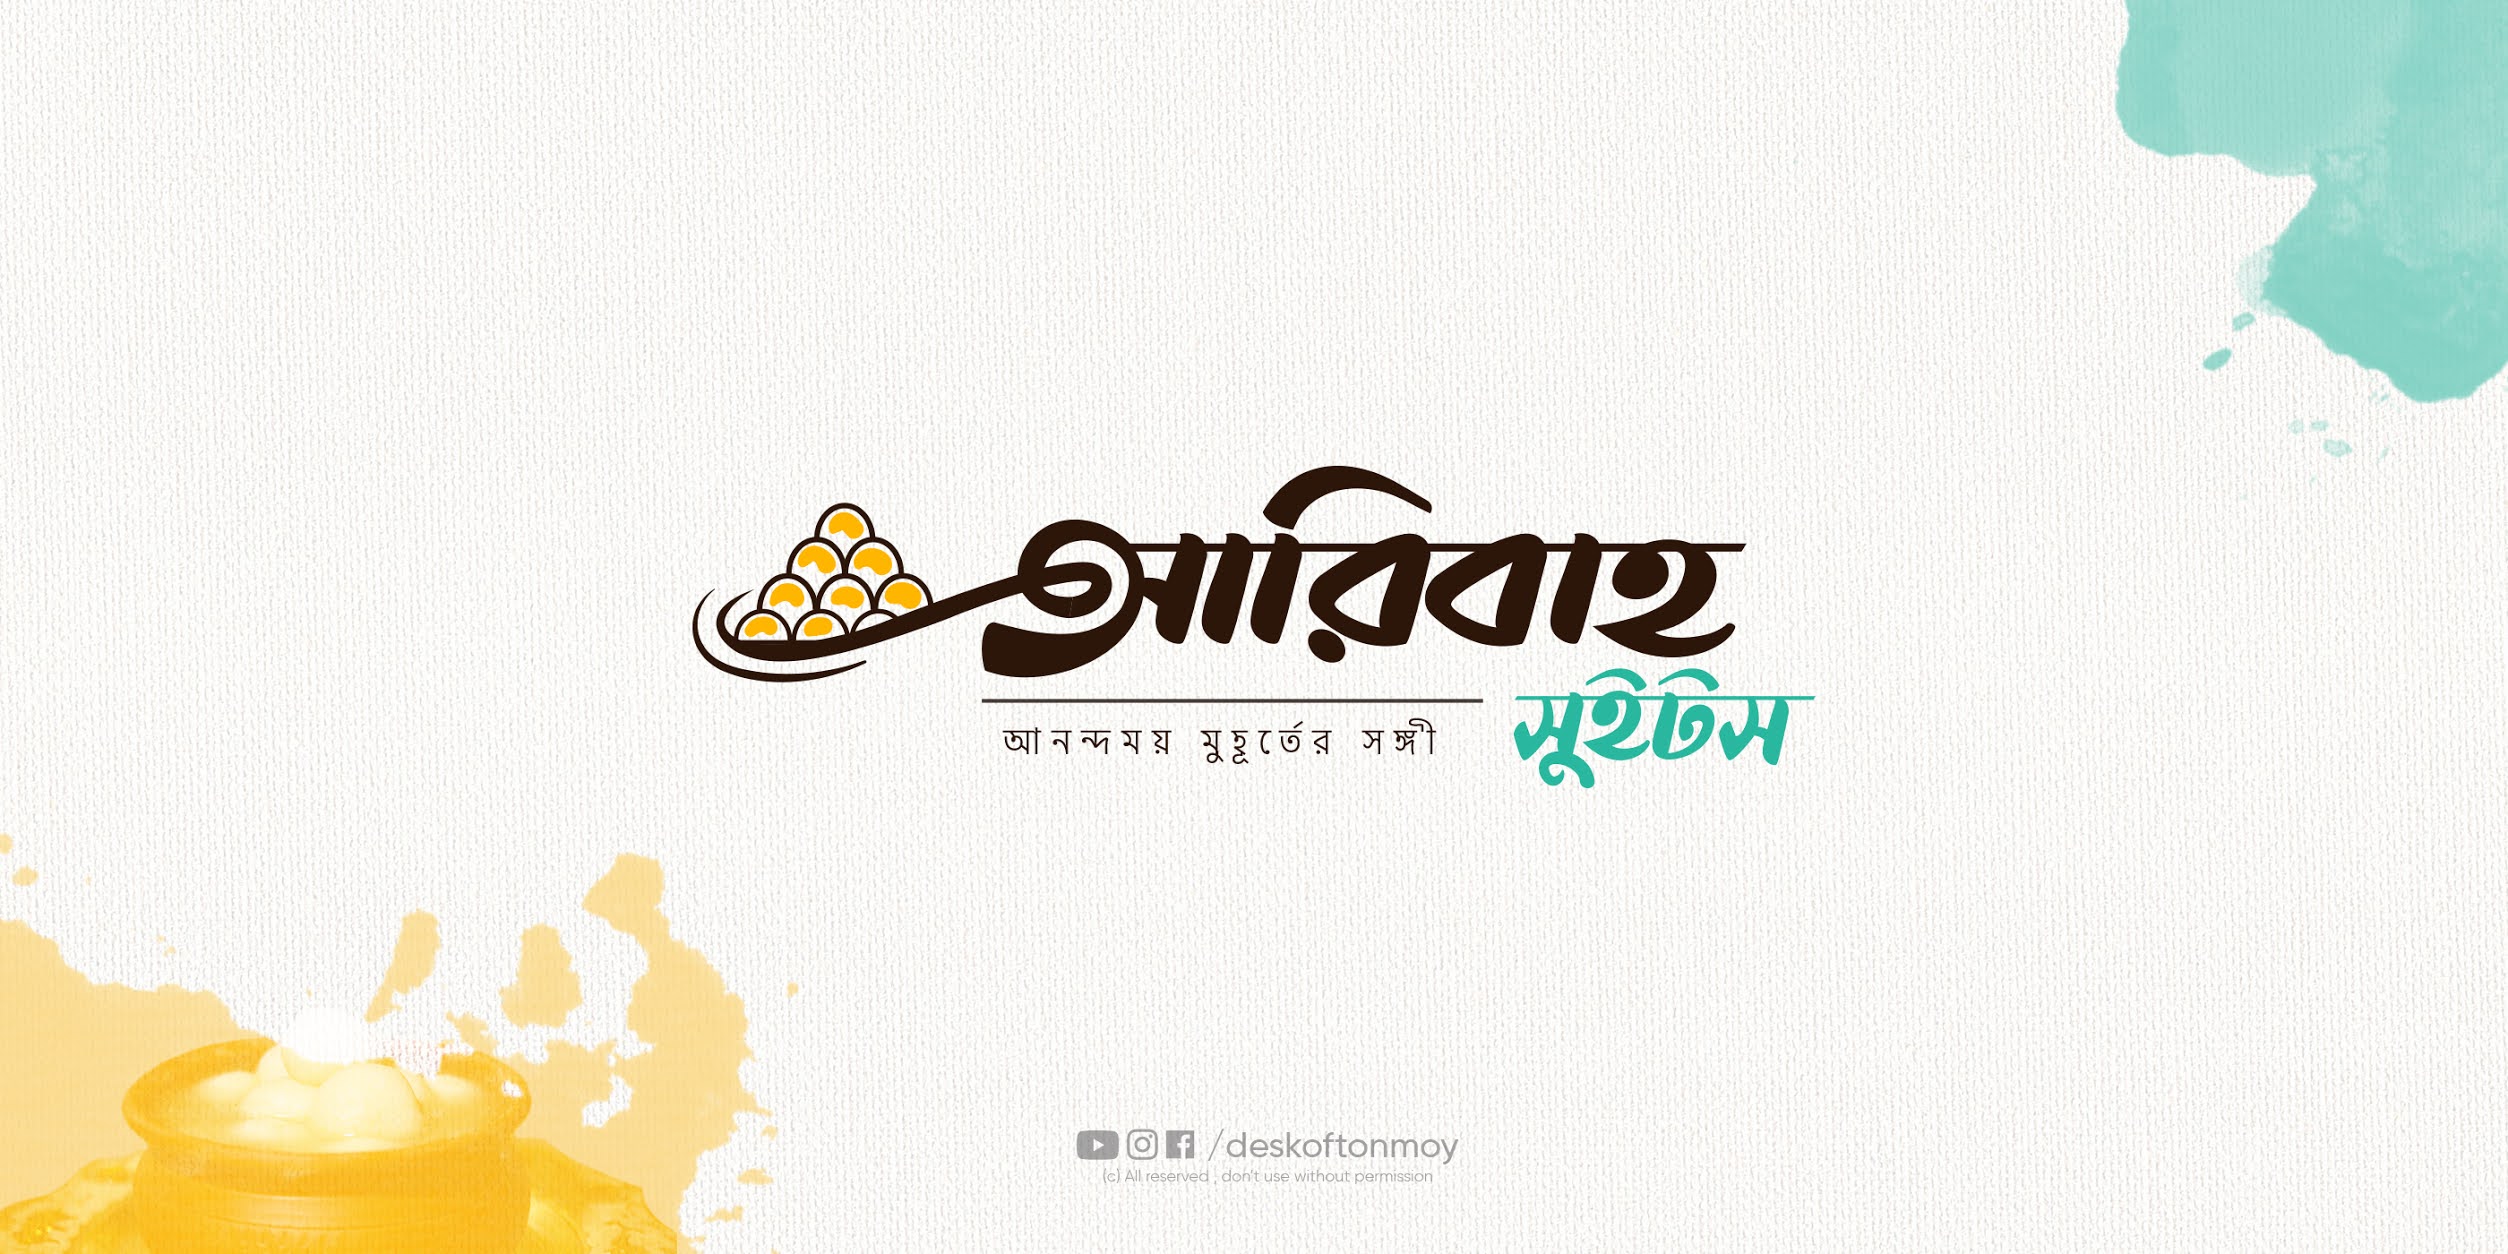 Update more than 56 bengali restaurant logo - ceg.edu.vn